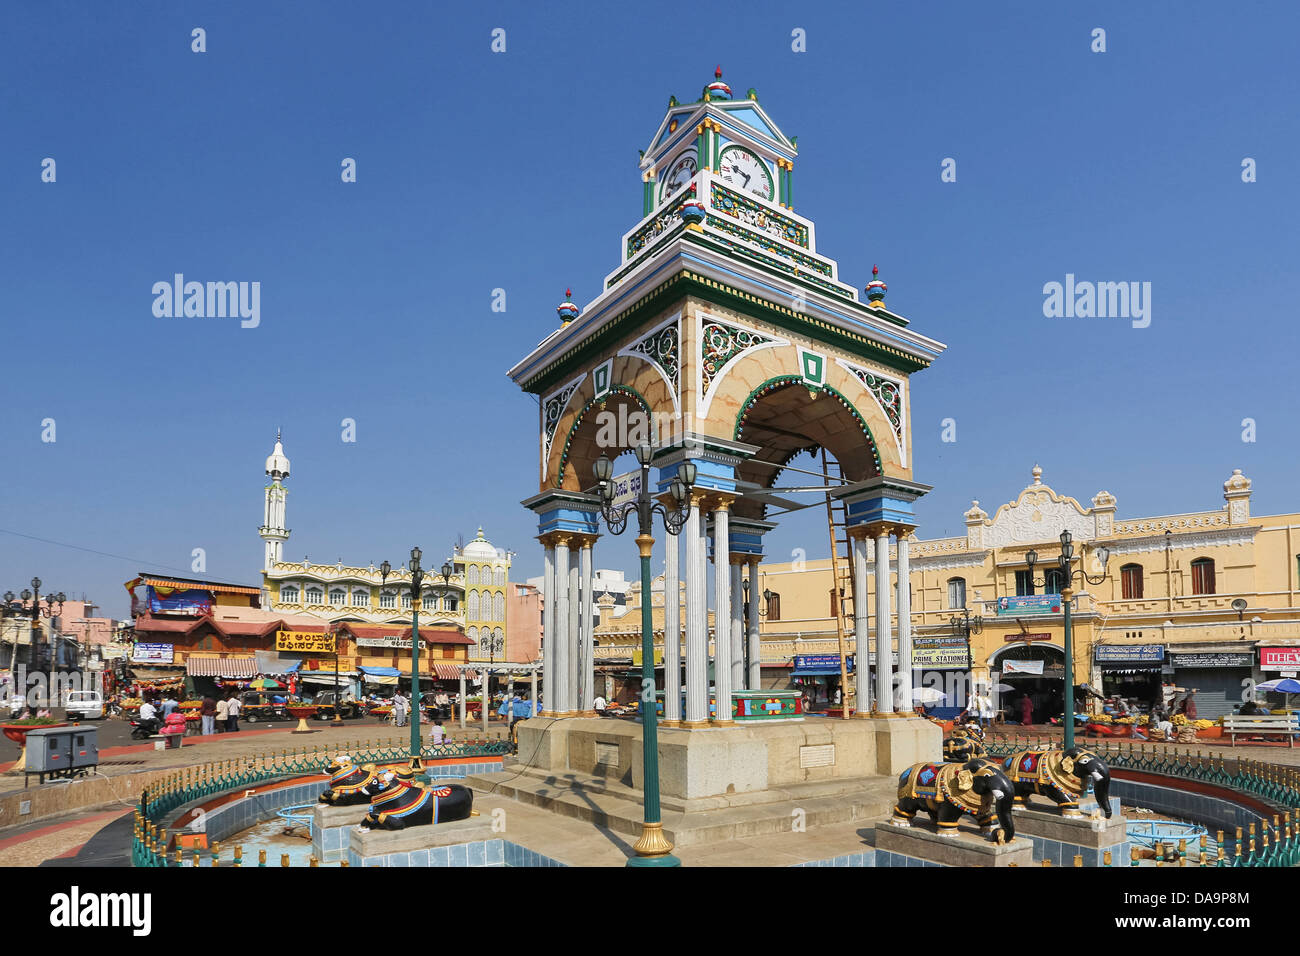 L'Inde, l'Inde, Asie, Karnataka, Mysore, petit tour de l'horloge, Devaraja Market, Devaraja, horloge, Arch, l'architecture, coloré Banque D'Images